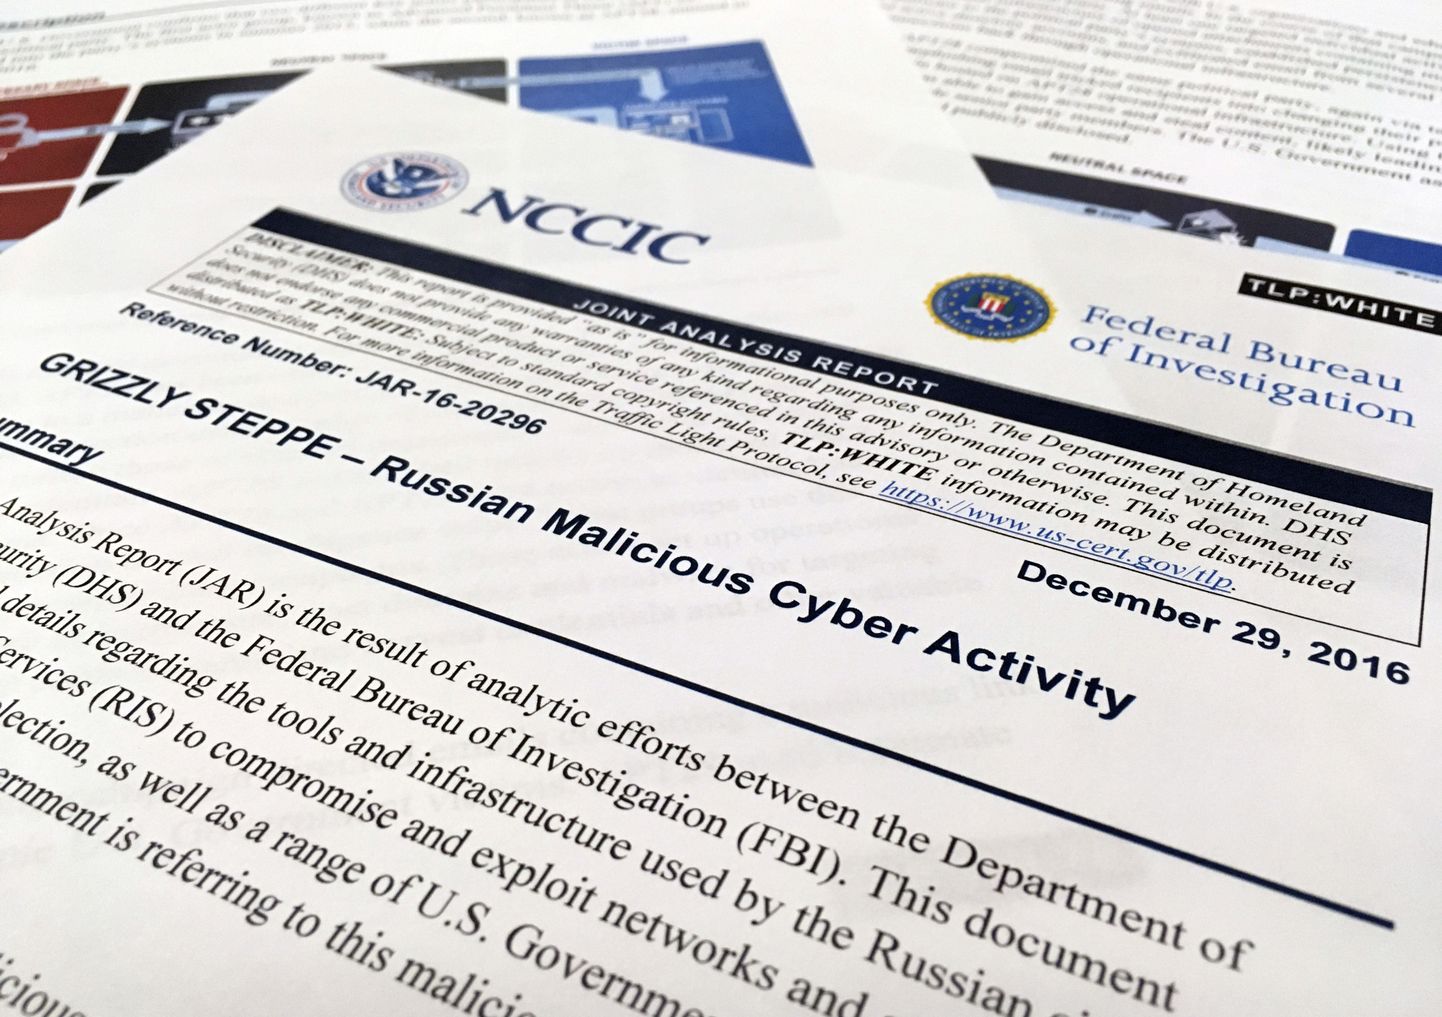 USA luureagentuuride avaldatud raprt, mis kirjeldab Venemaa küberkuritegevust.